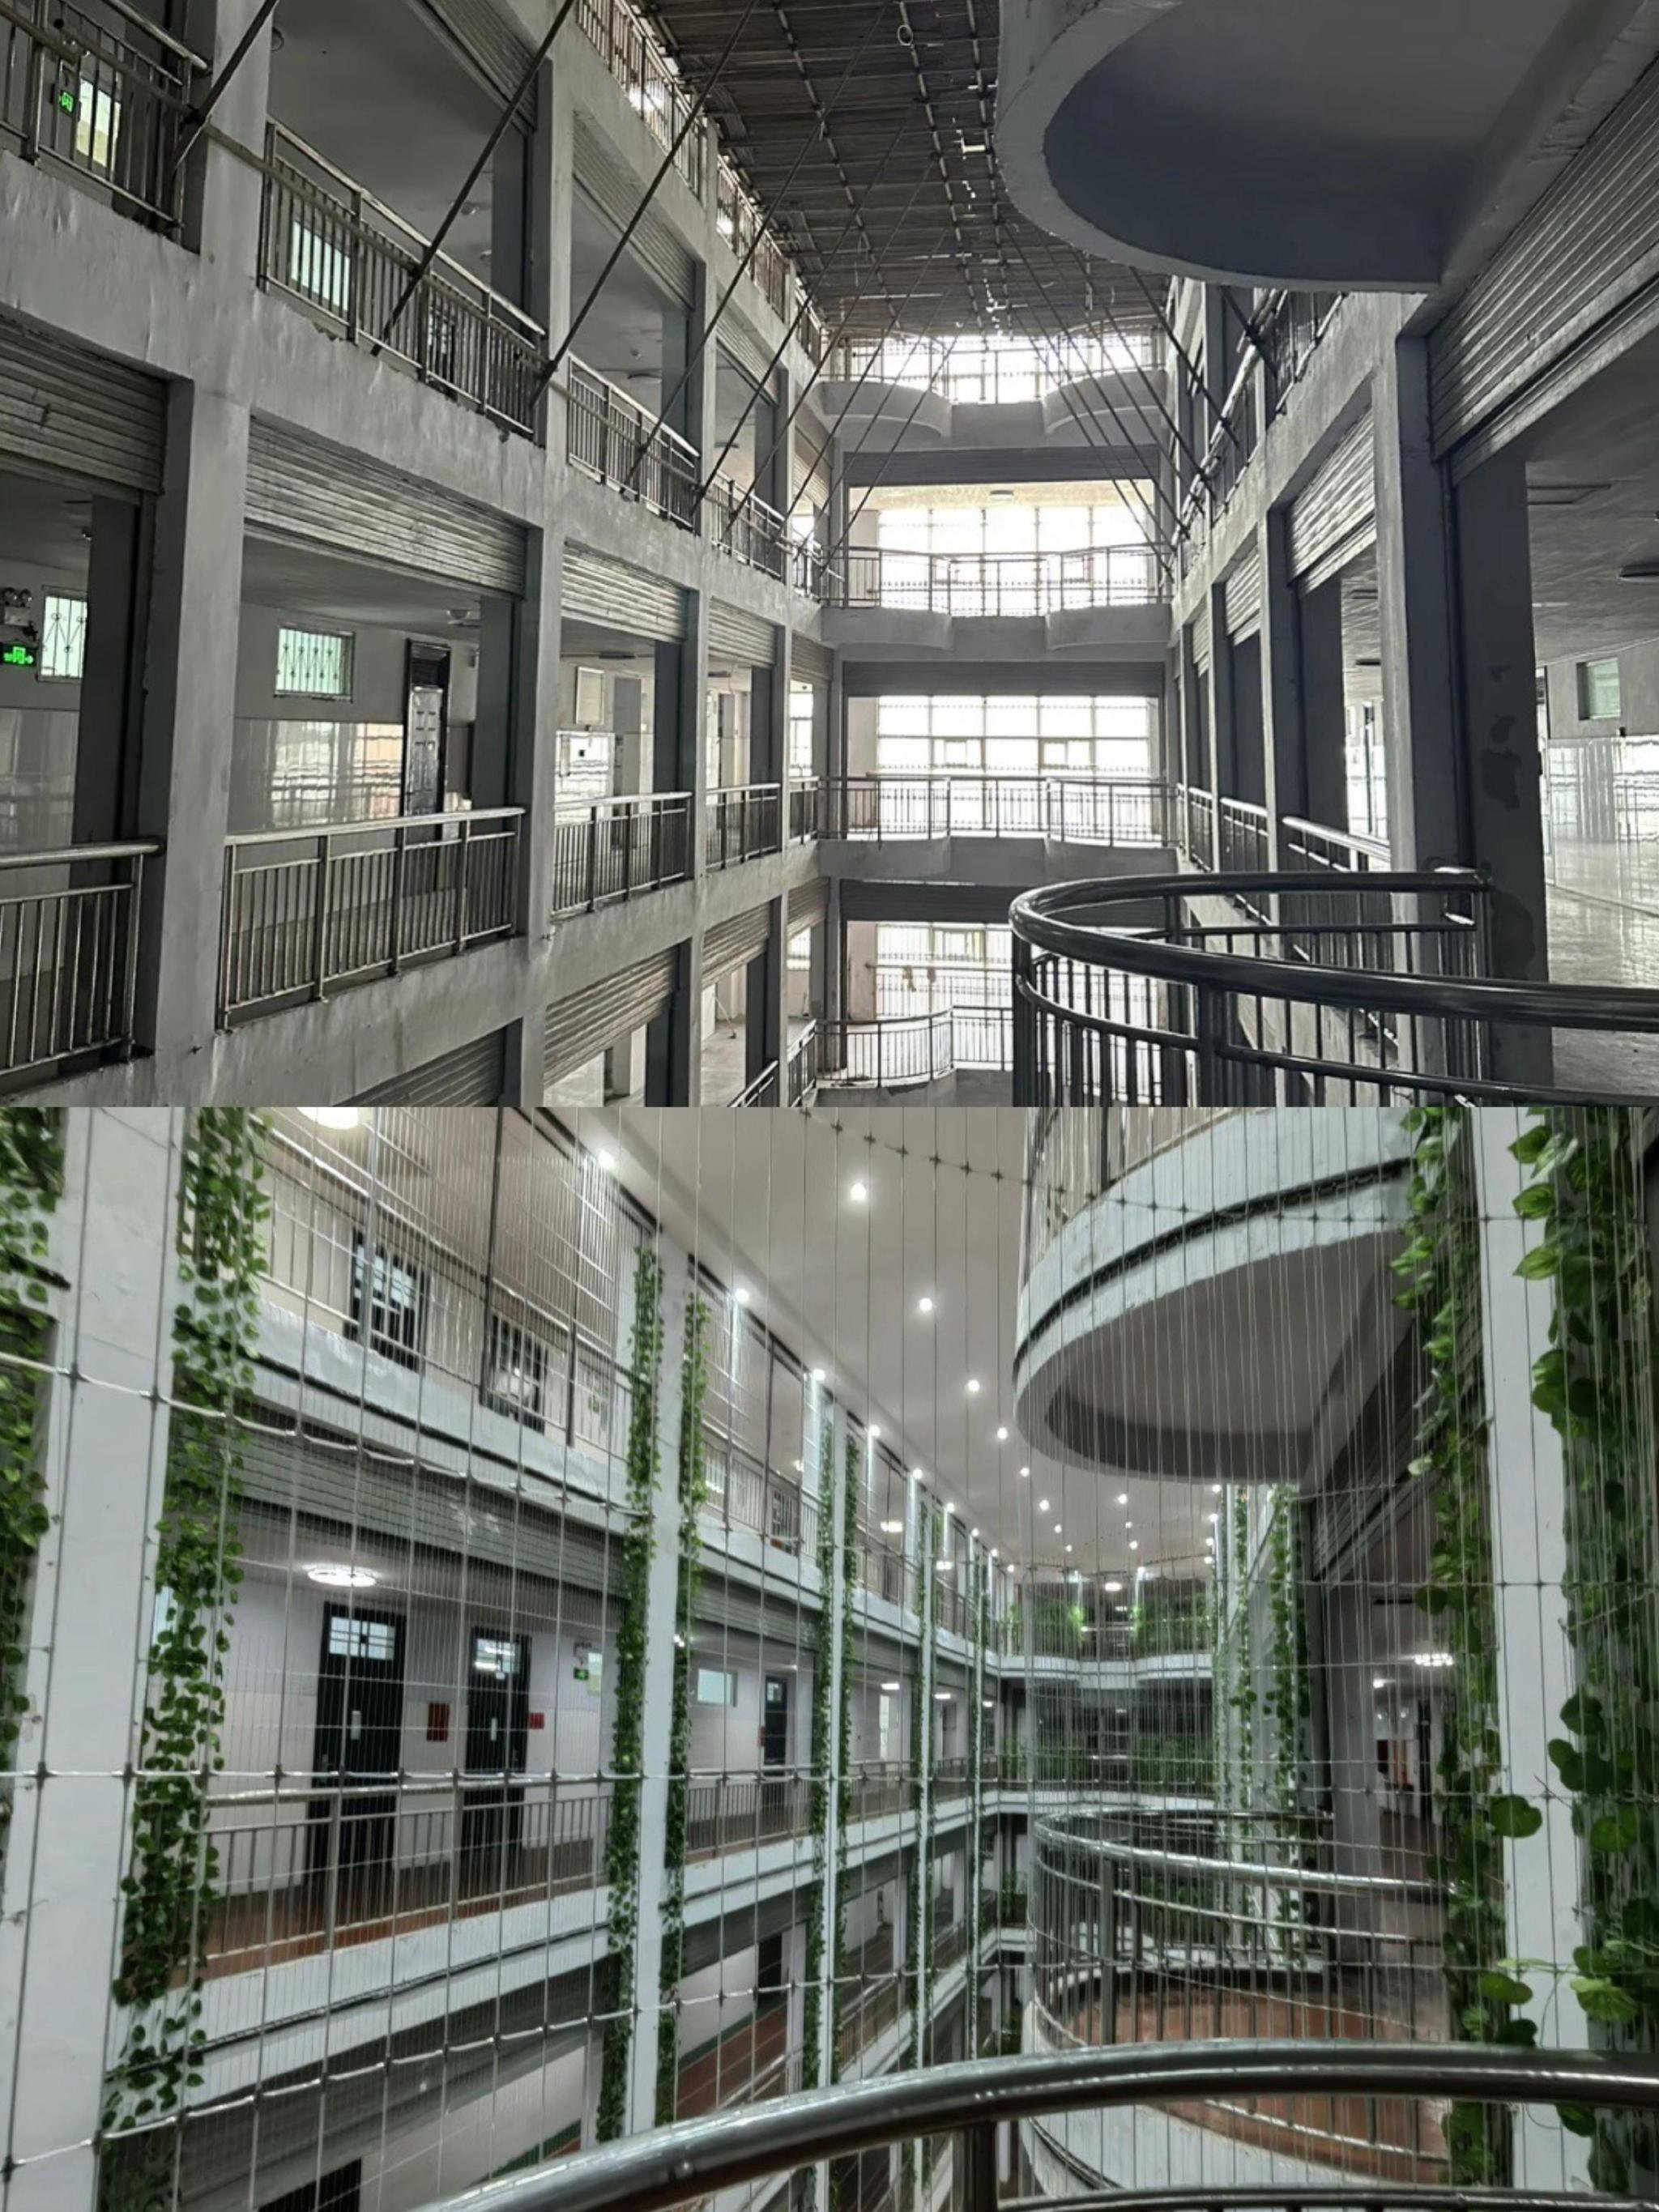 河南永城市一所中学安装防护网前后对比图。